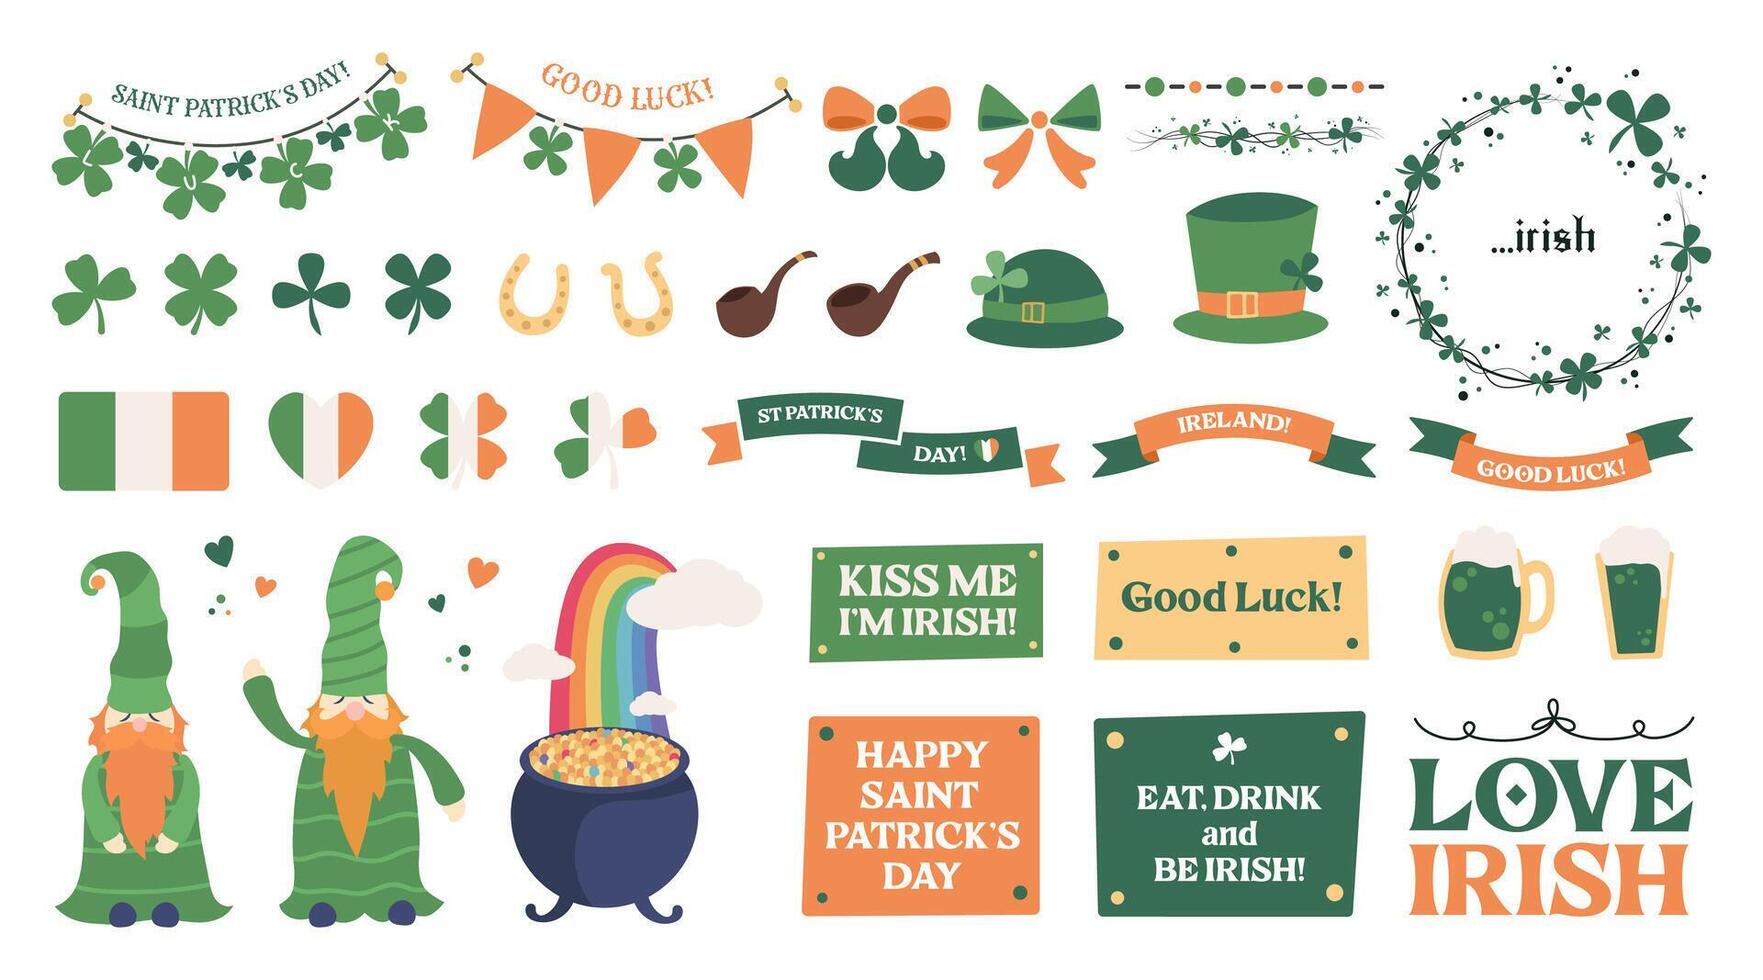 Santo patrick's día pegatina colocar, irlandesa fiesta diseño elementos con irlandesa banderas, símbolos, verde cerveza, sombreros, trébol marco, herradura, de fumar tubería y duende oro. vector ilustración.